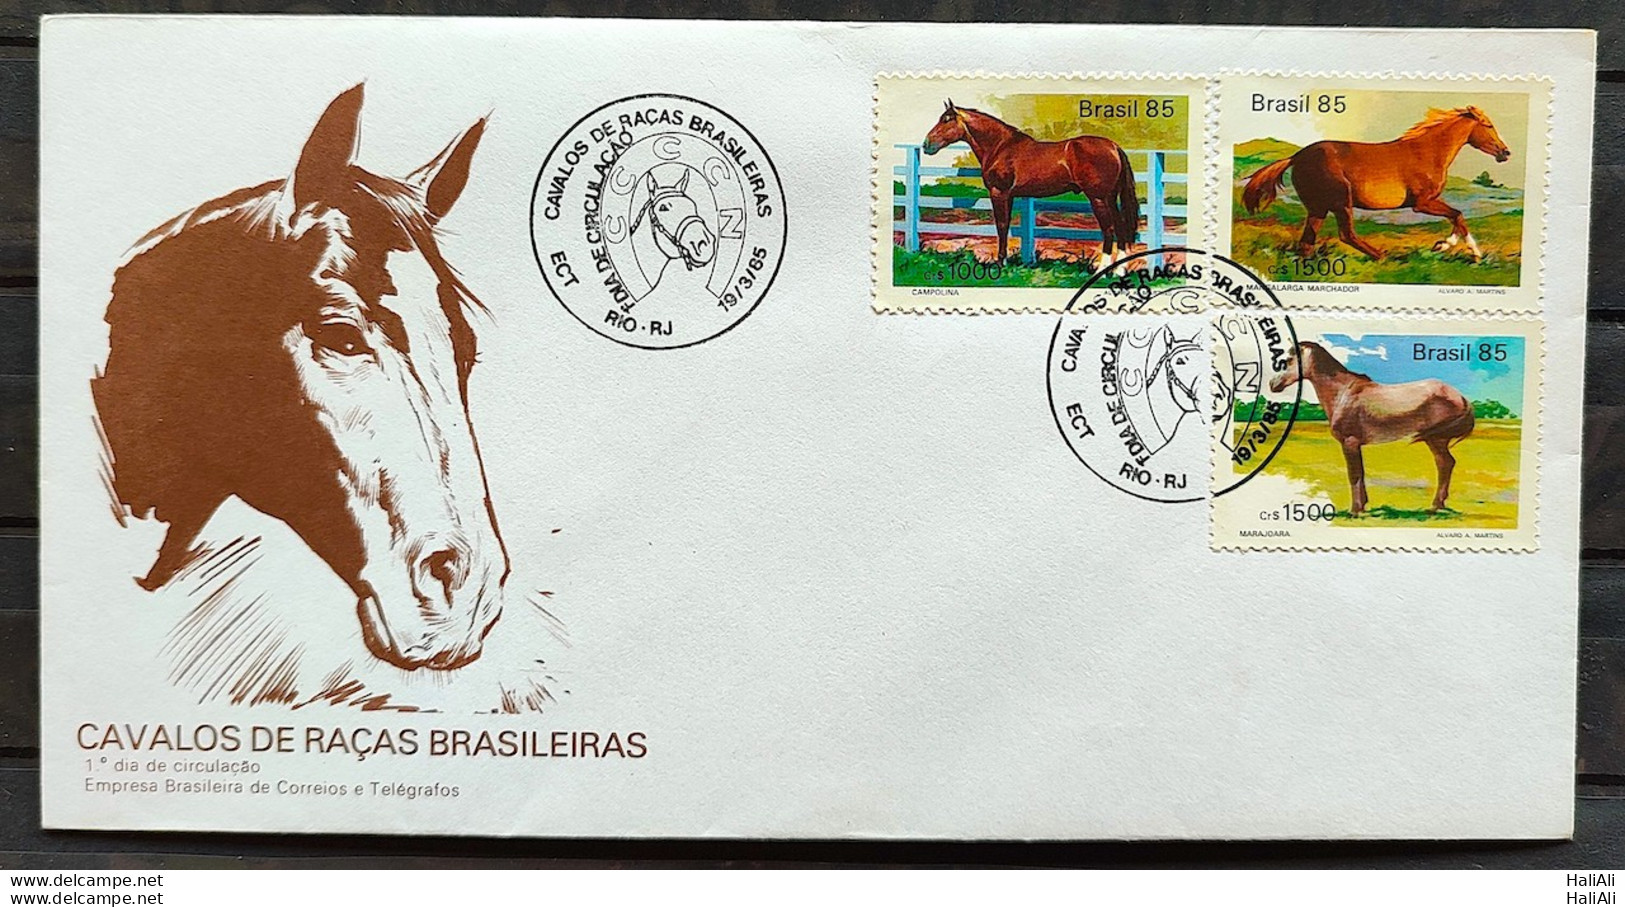 Brazil Envelope FDC 355 1985 Horses CBC RJ - FDC